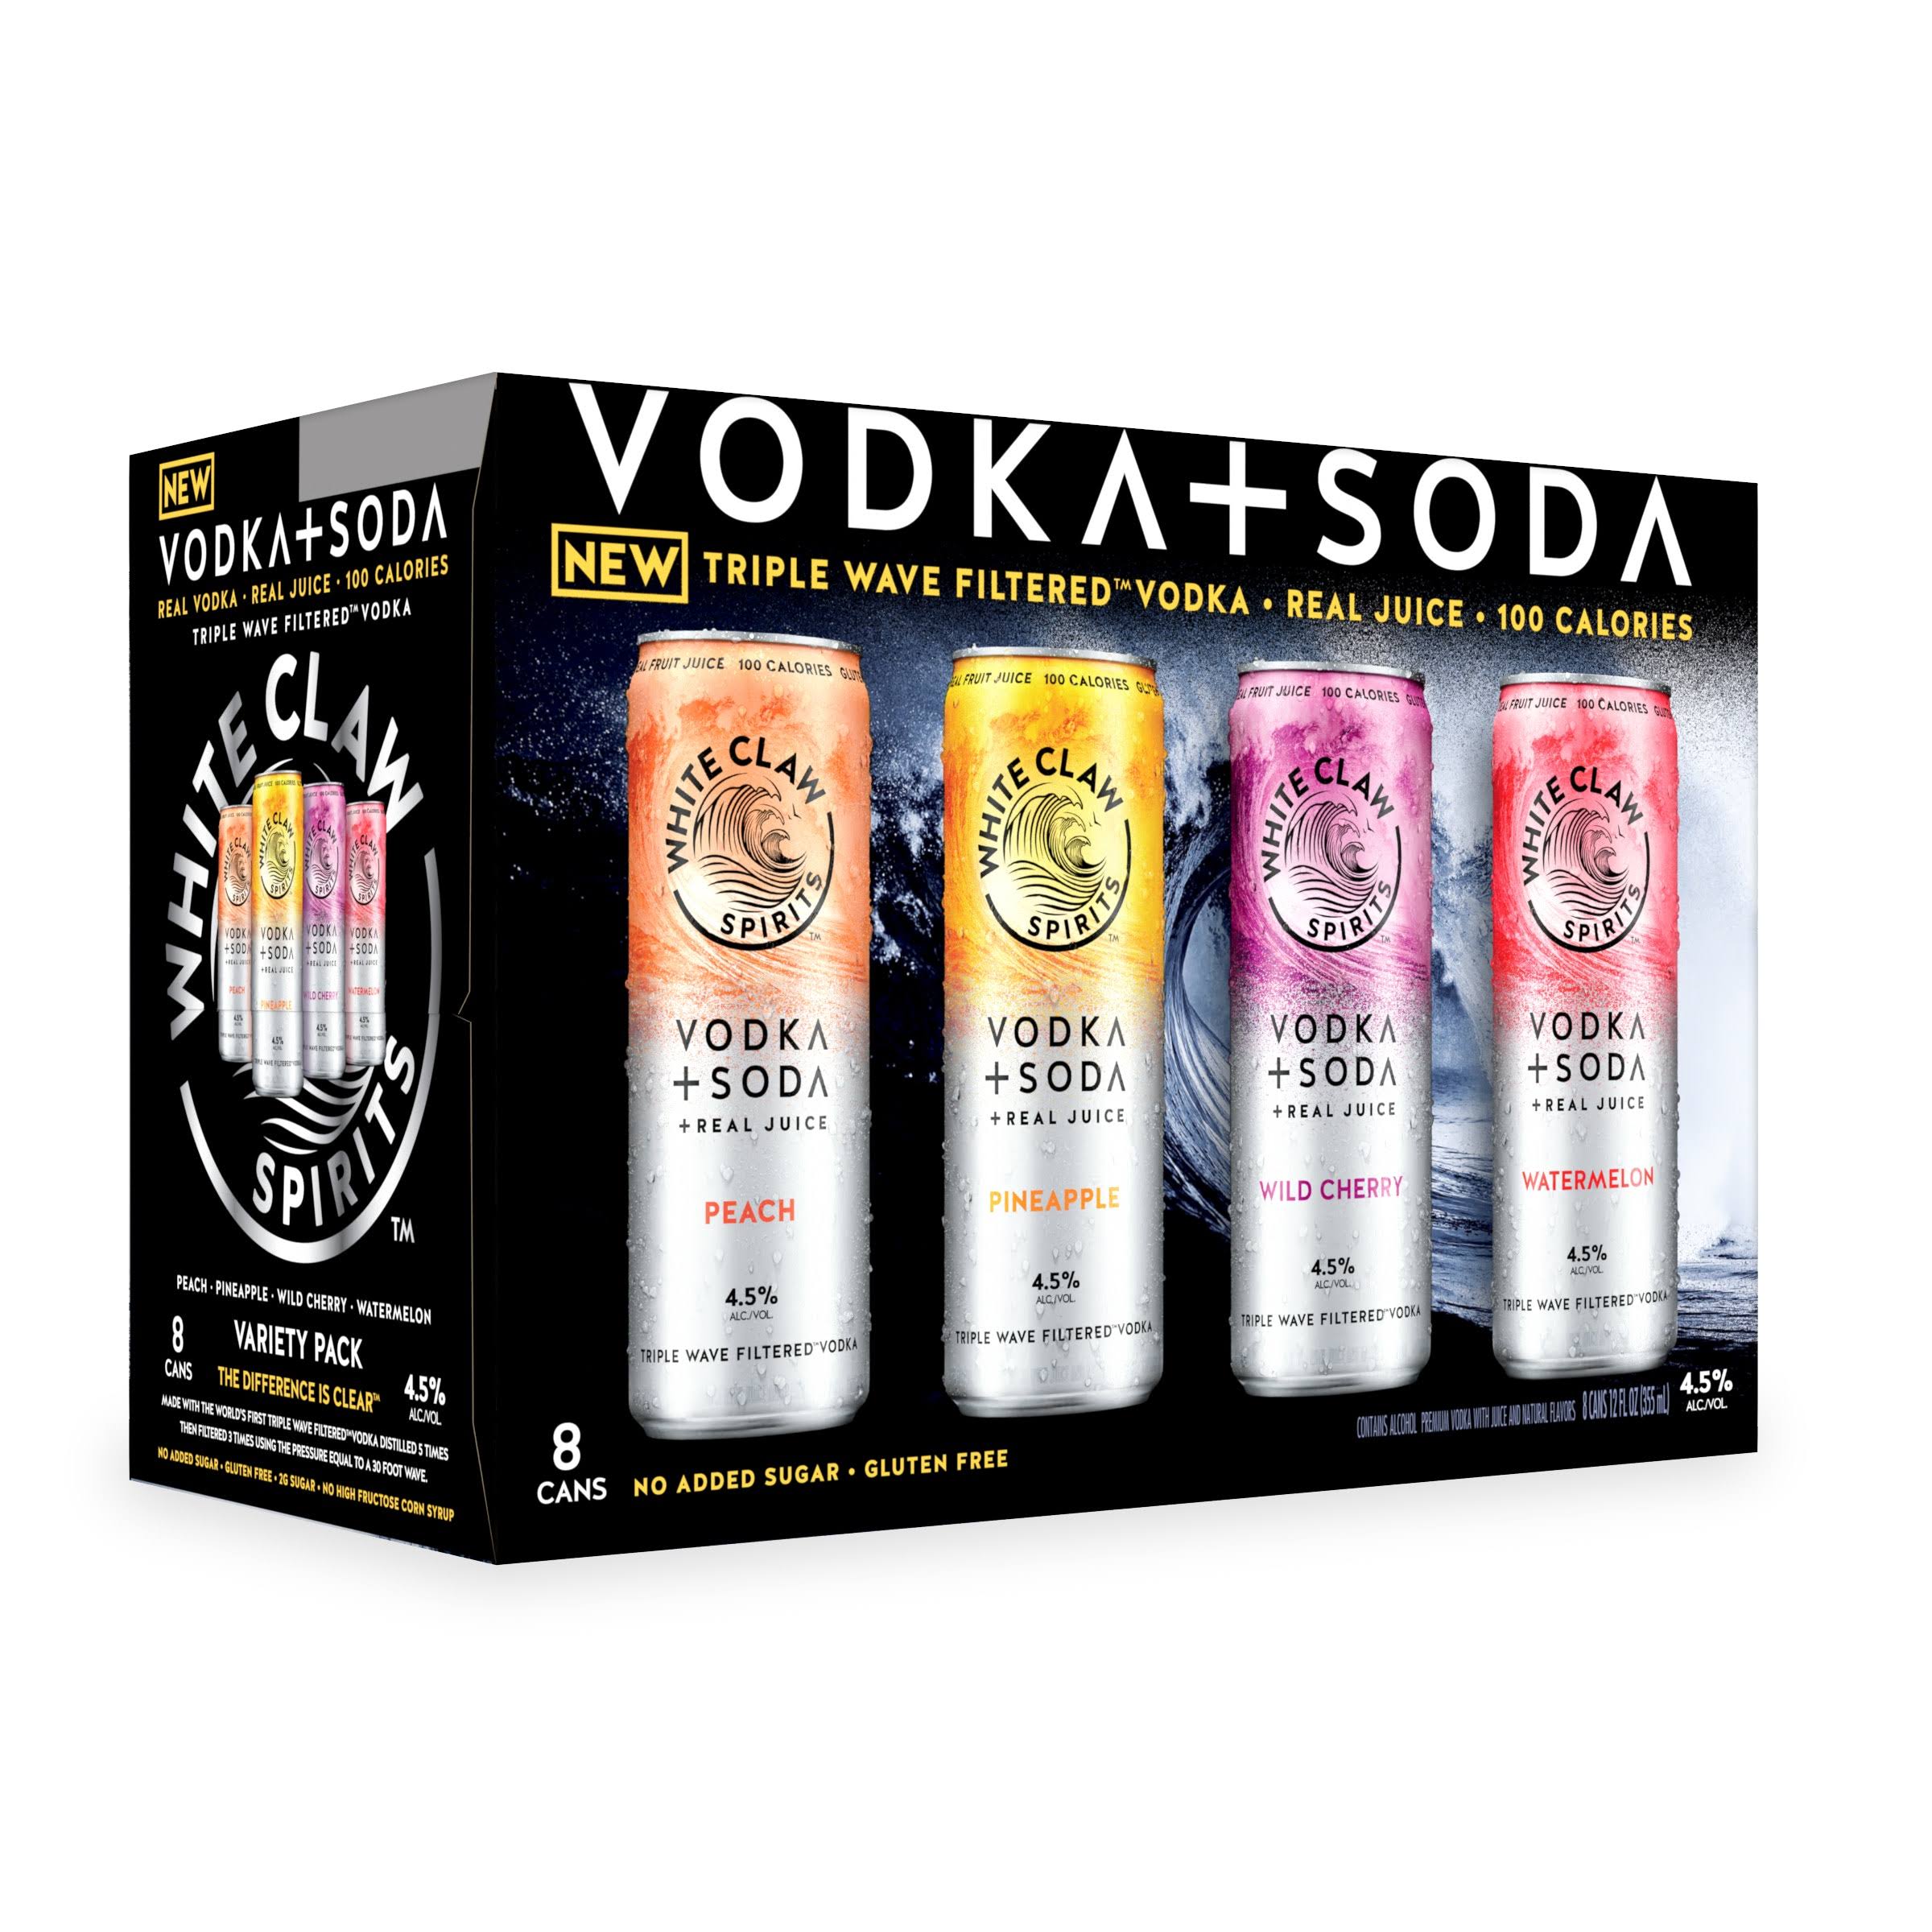 White Claw Vodka Soda Variety Pack